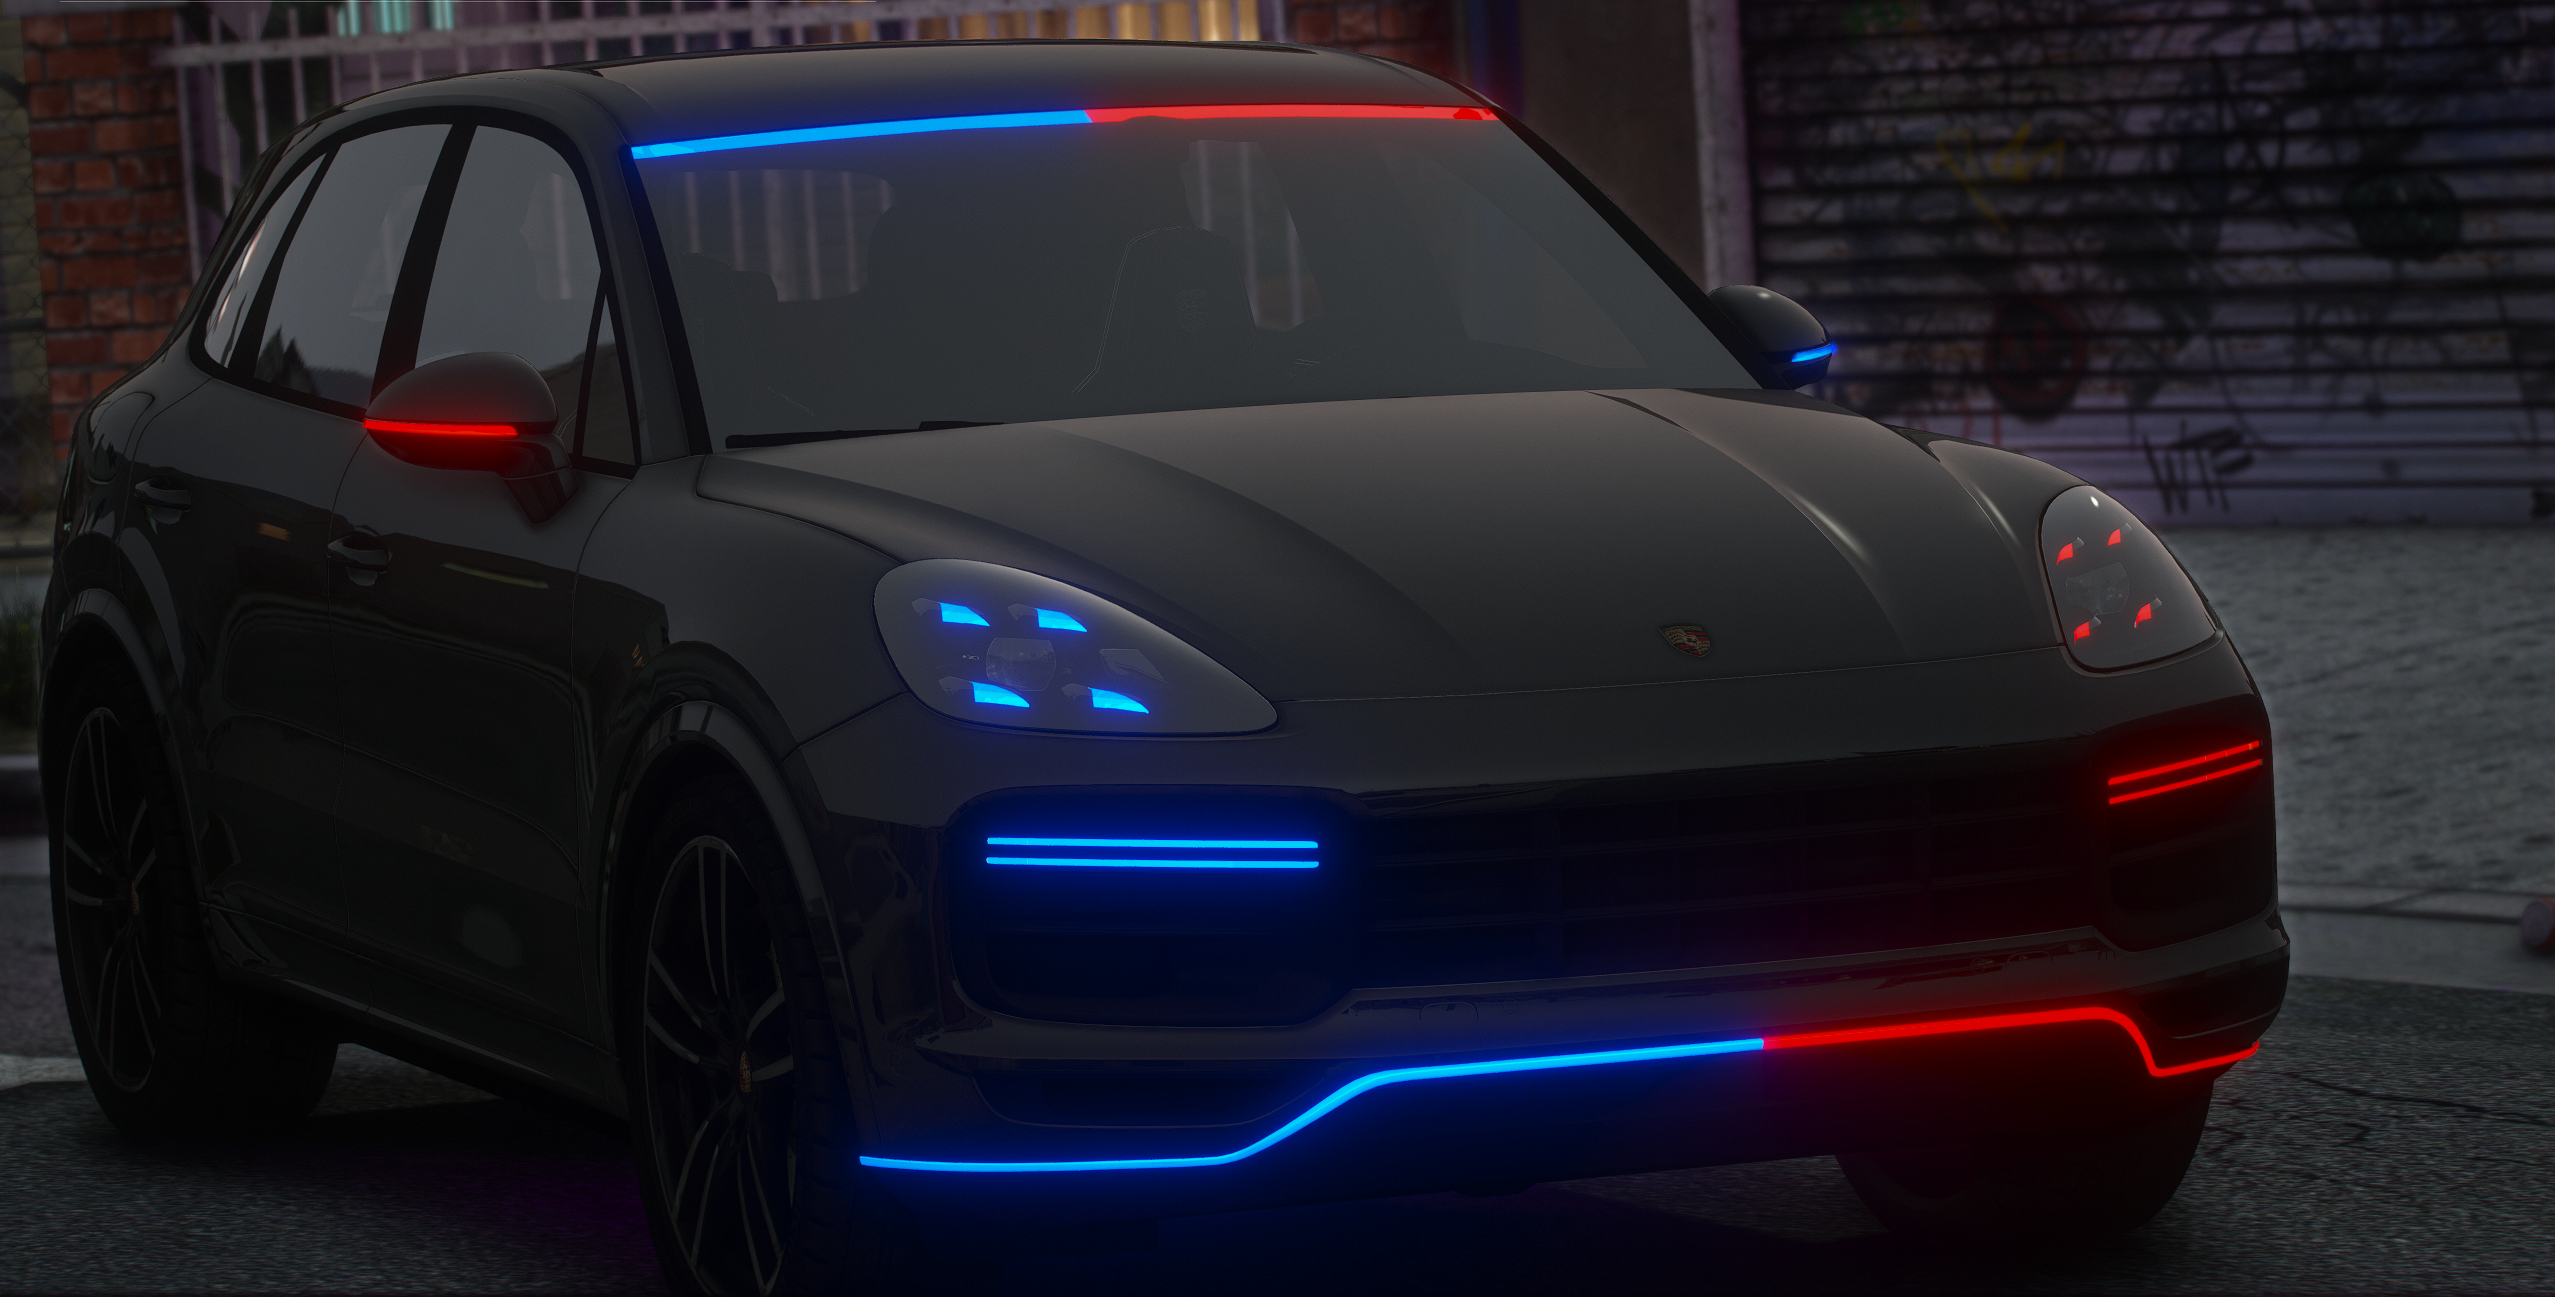 2019 Porsche Cayenne Turbo FiveM Police Vehicle